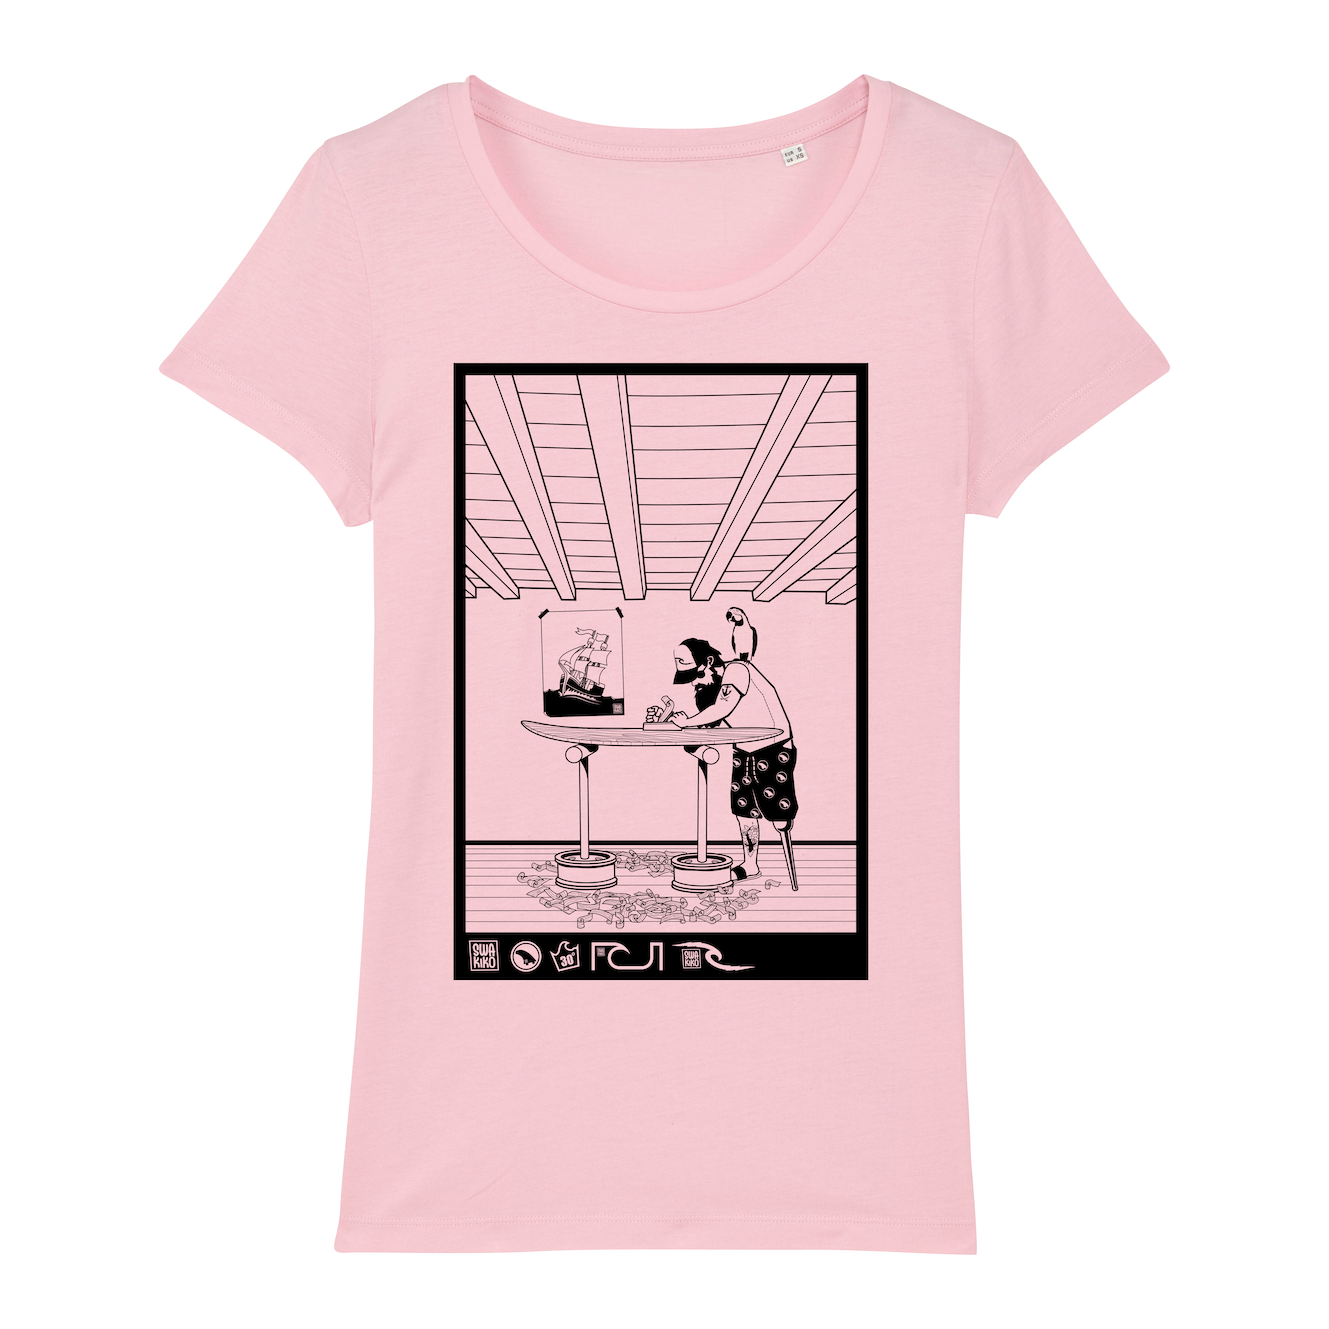 Surf T-shirt women, The Shaper, pink